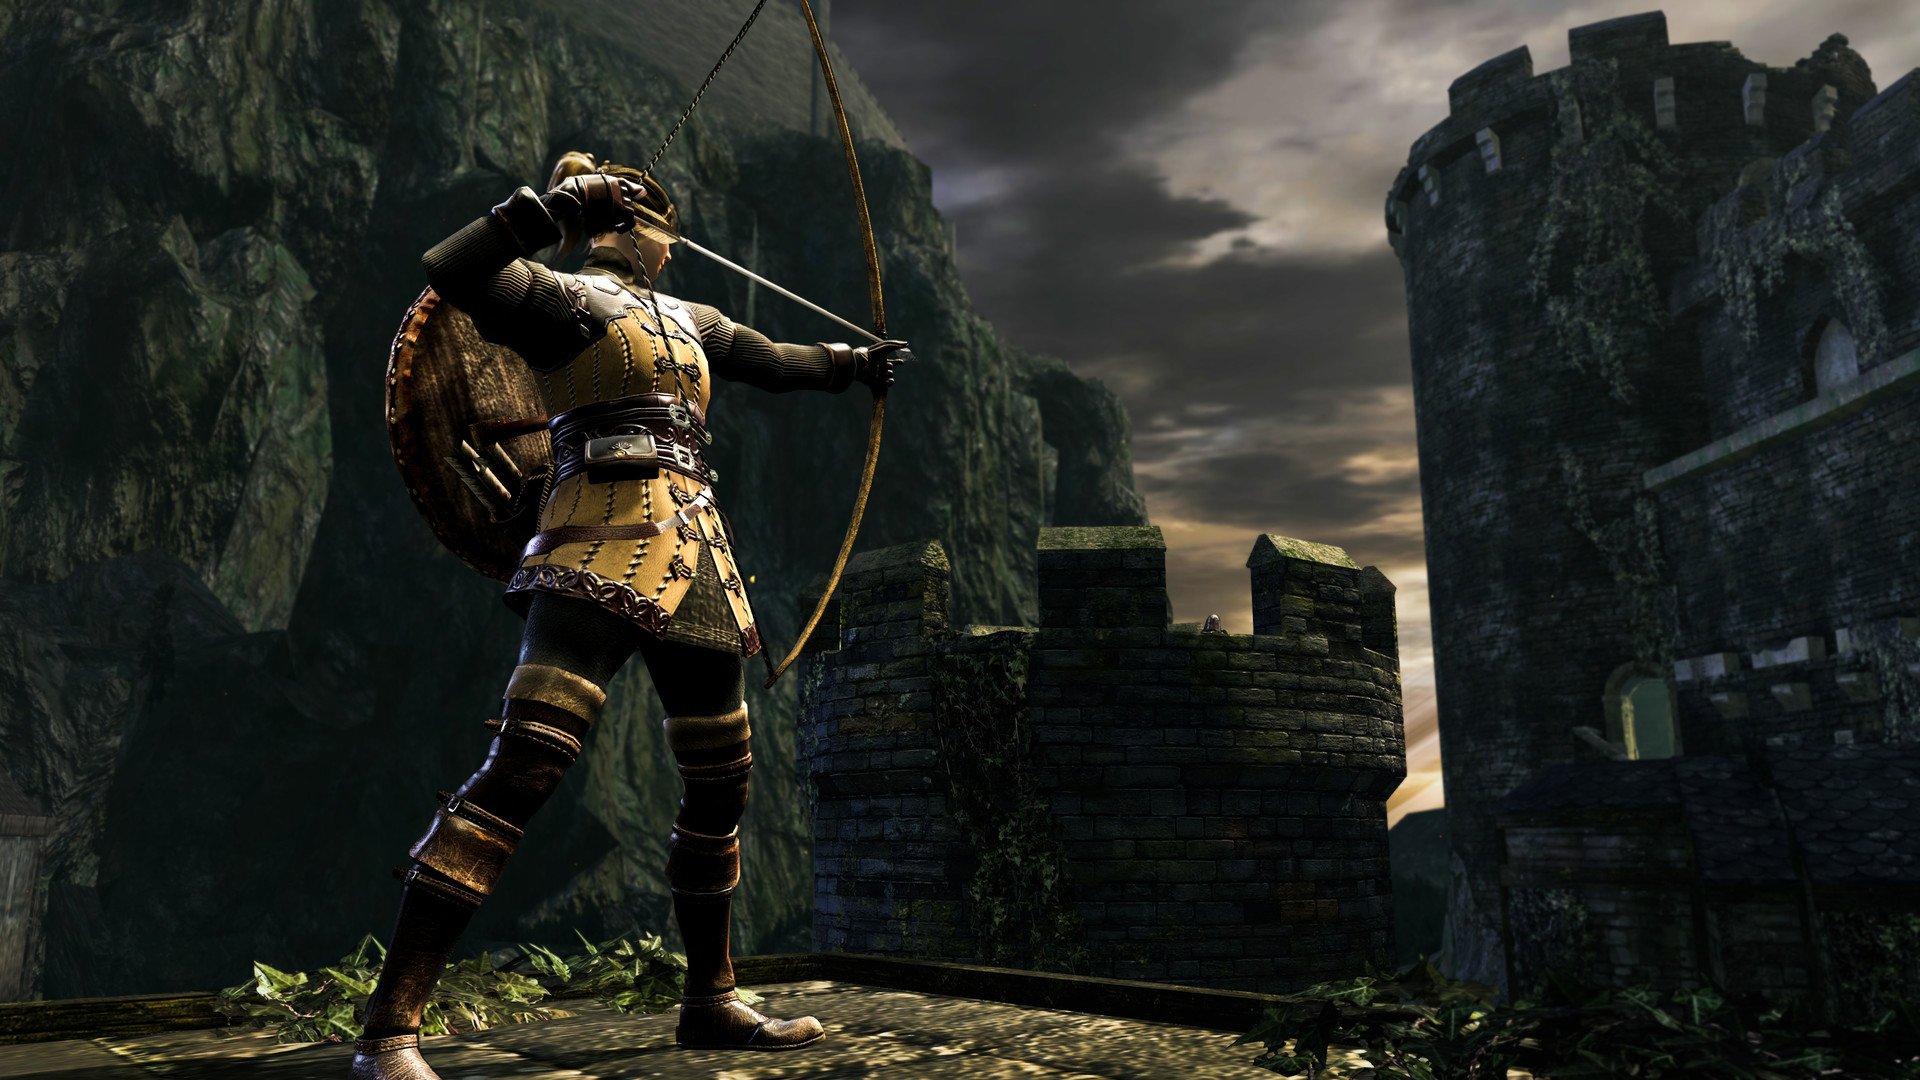 Game de combate medieval está de graça no PC, PS4 e Xbox a partir de hoje -  Infosfera